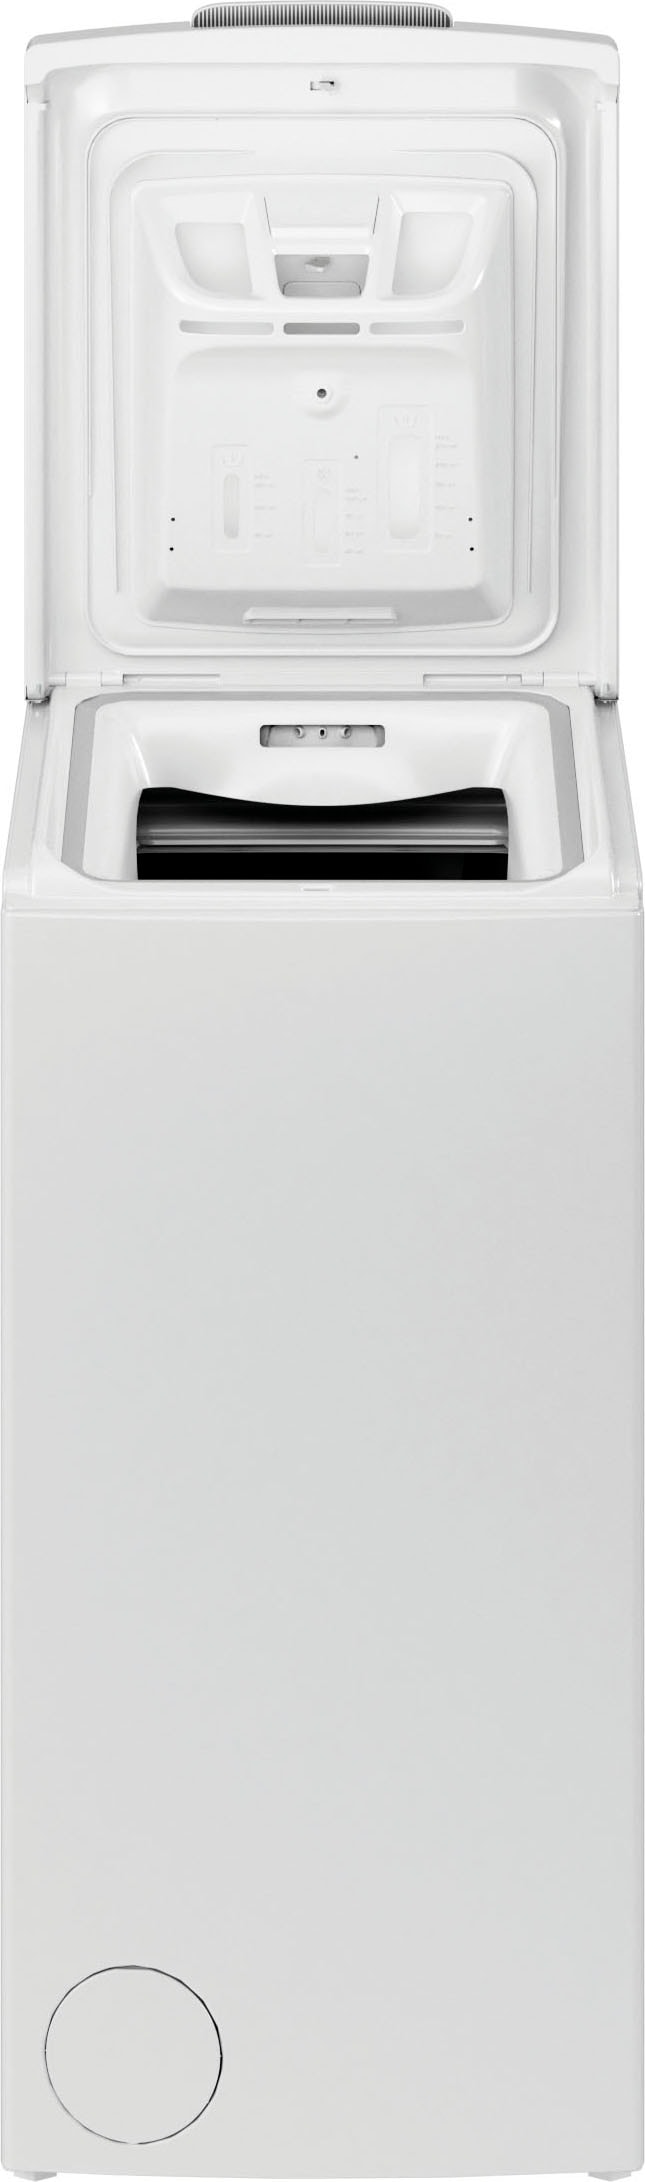 »PWT PWT U/ Privileg 6 Waschmaschine bestellen min Toplader kg, S6245E, 1200 S6245E«, C C